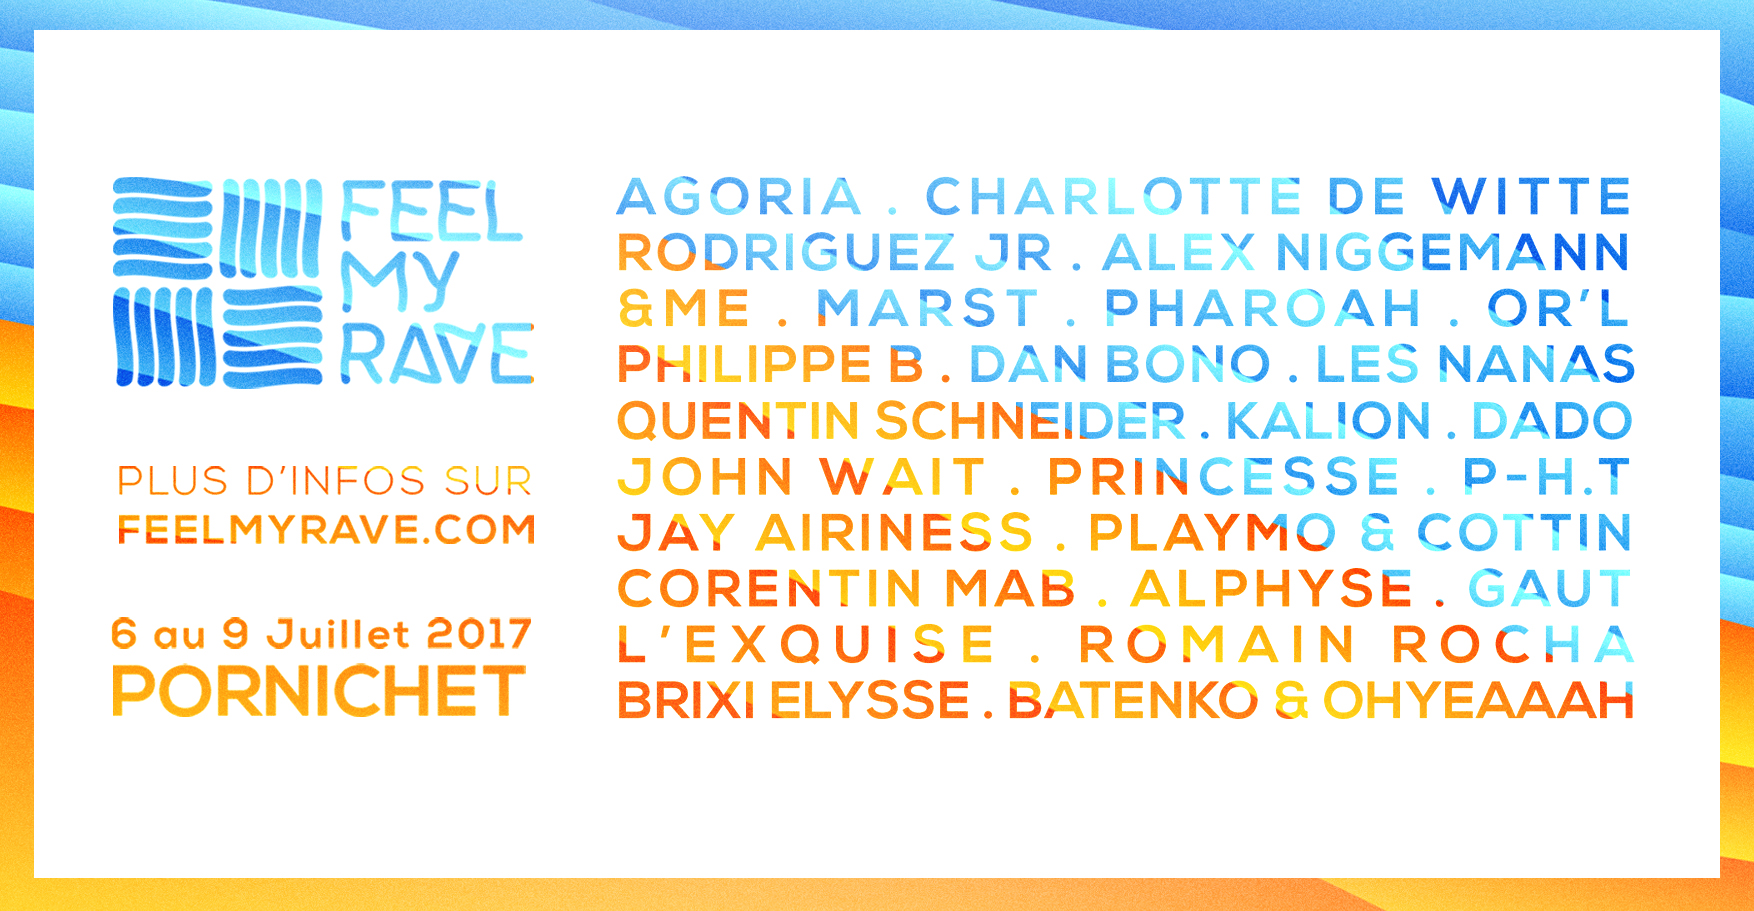 Feel My Rave Festival, du 6 au 9 juillet 2017 à Pornichet - Photo 9